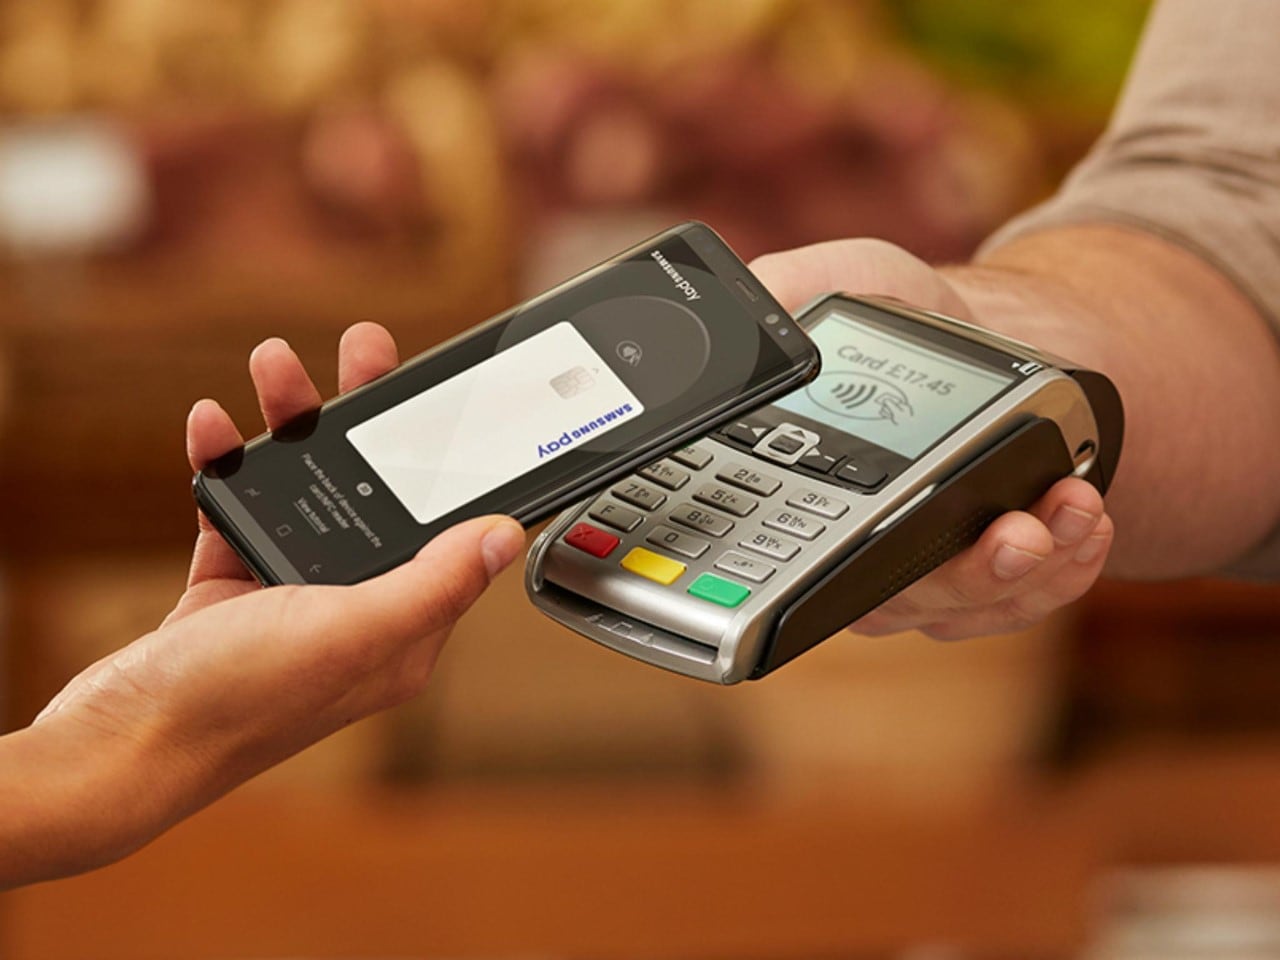 ¿Desaparecerán las tarjetas de crédito? El 2,4% de los pagos ya se efectúan con el móvil